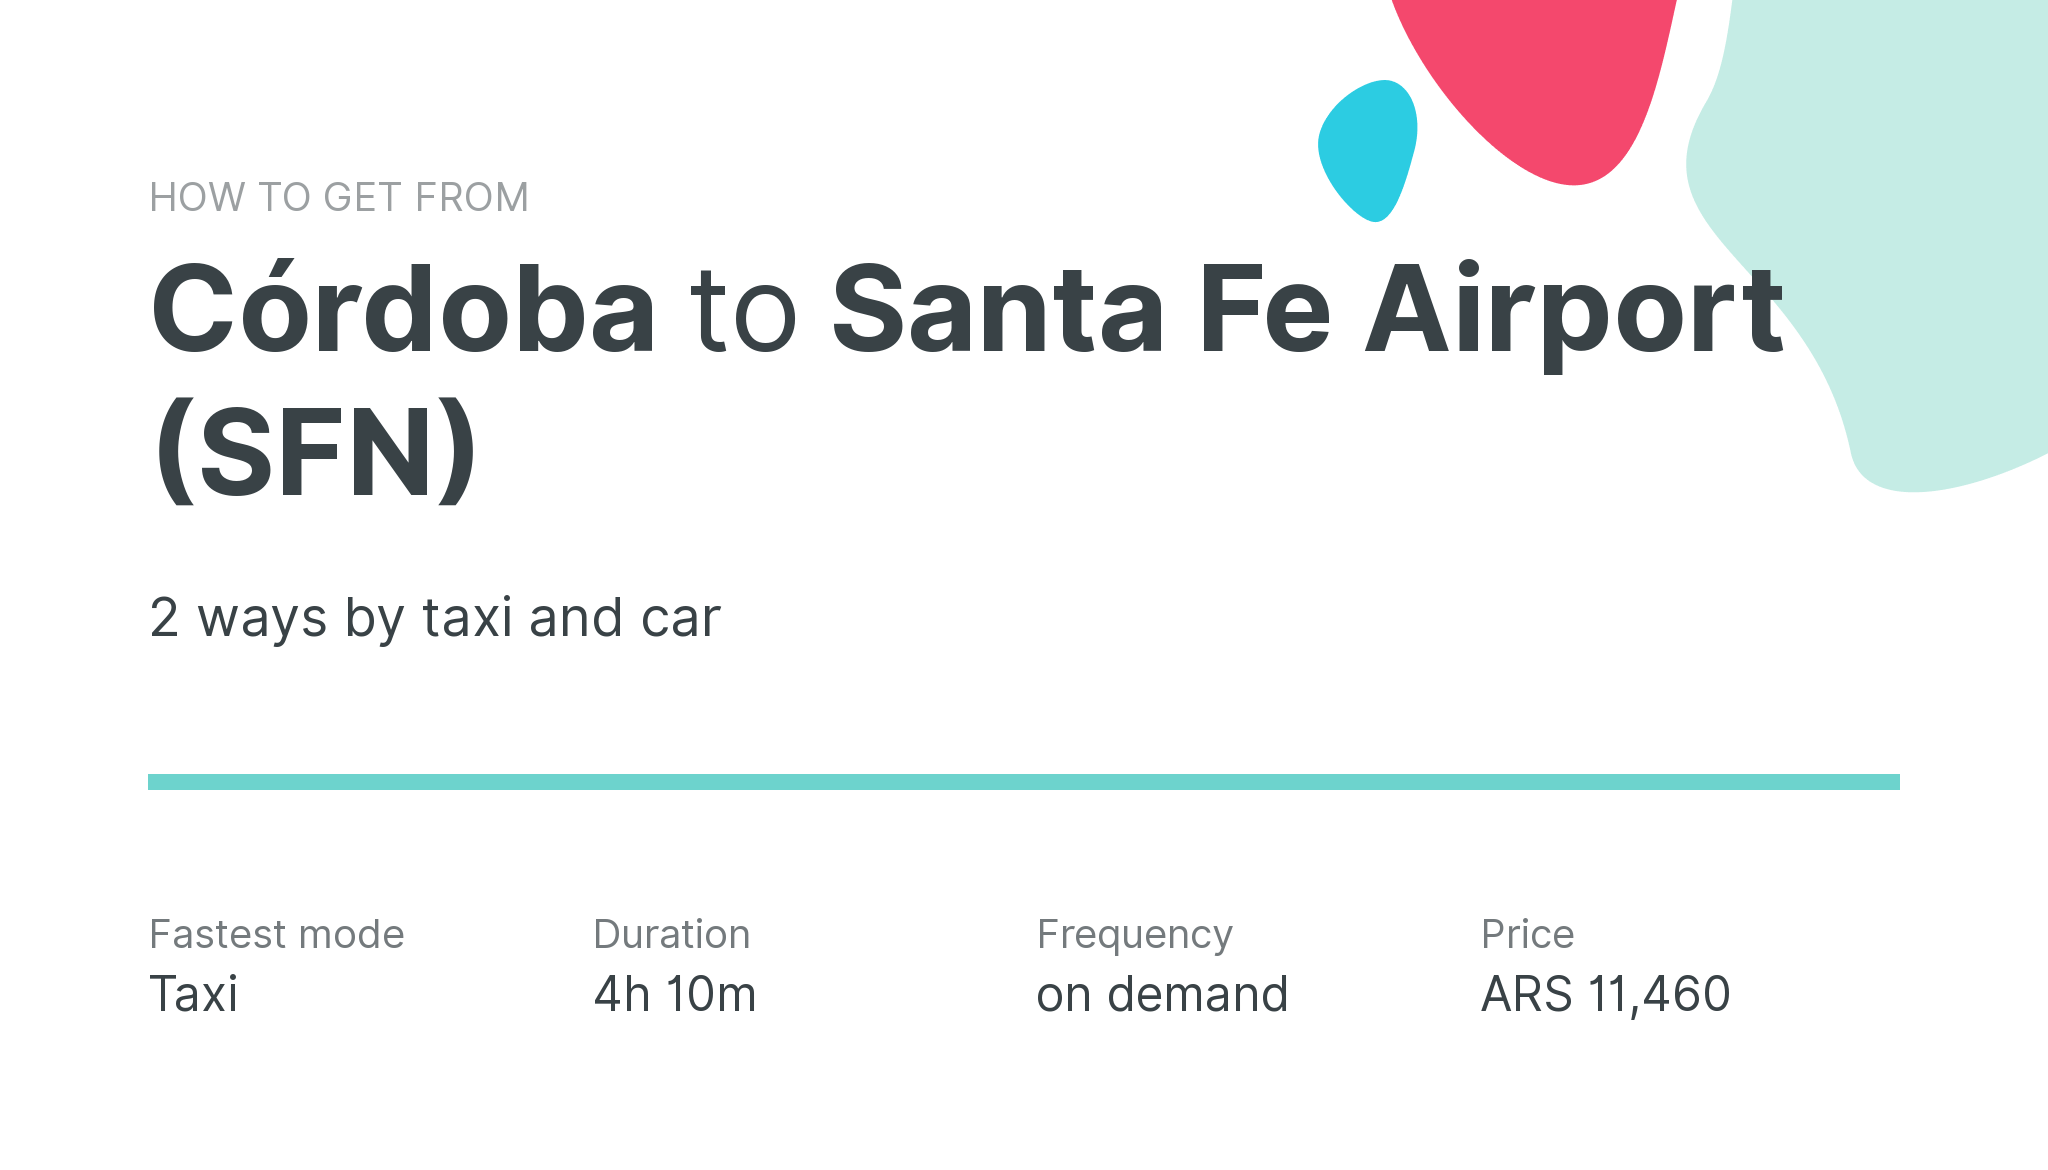 How do I get from Córdoba to Santa Fe Airport (SFN)